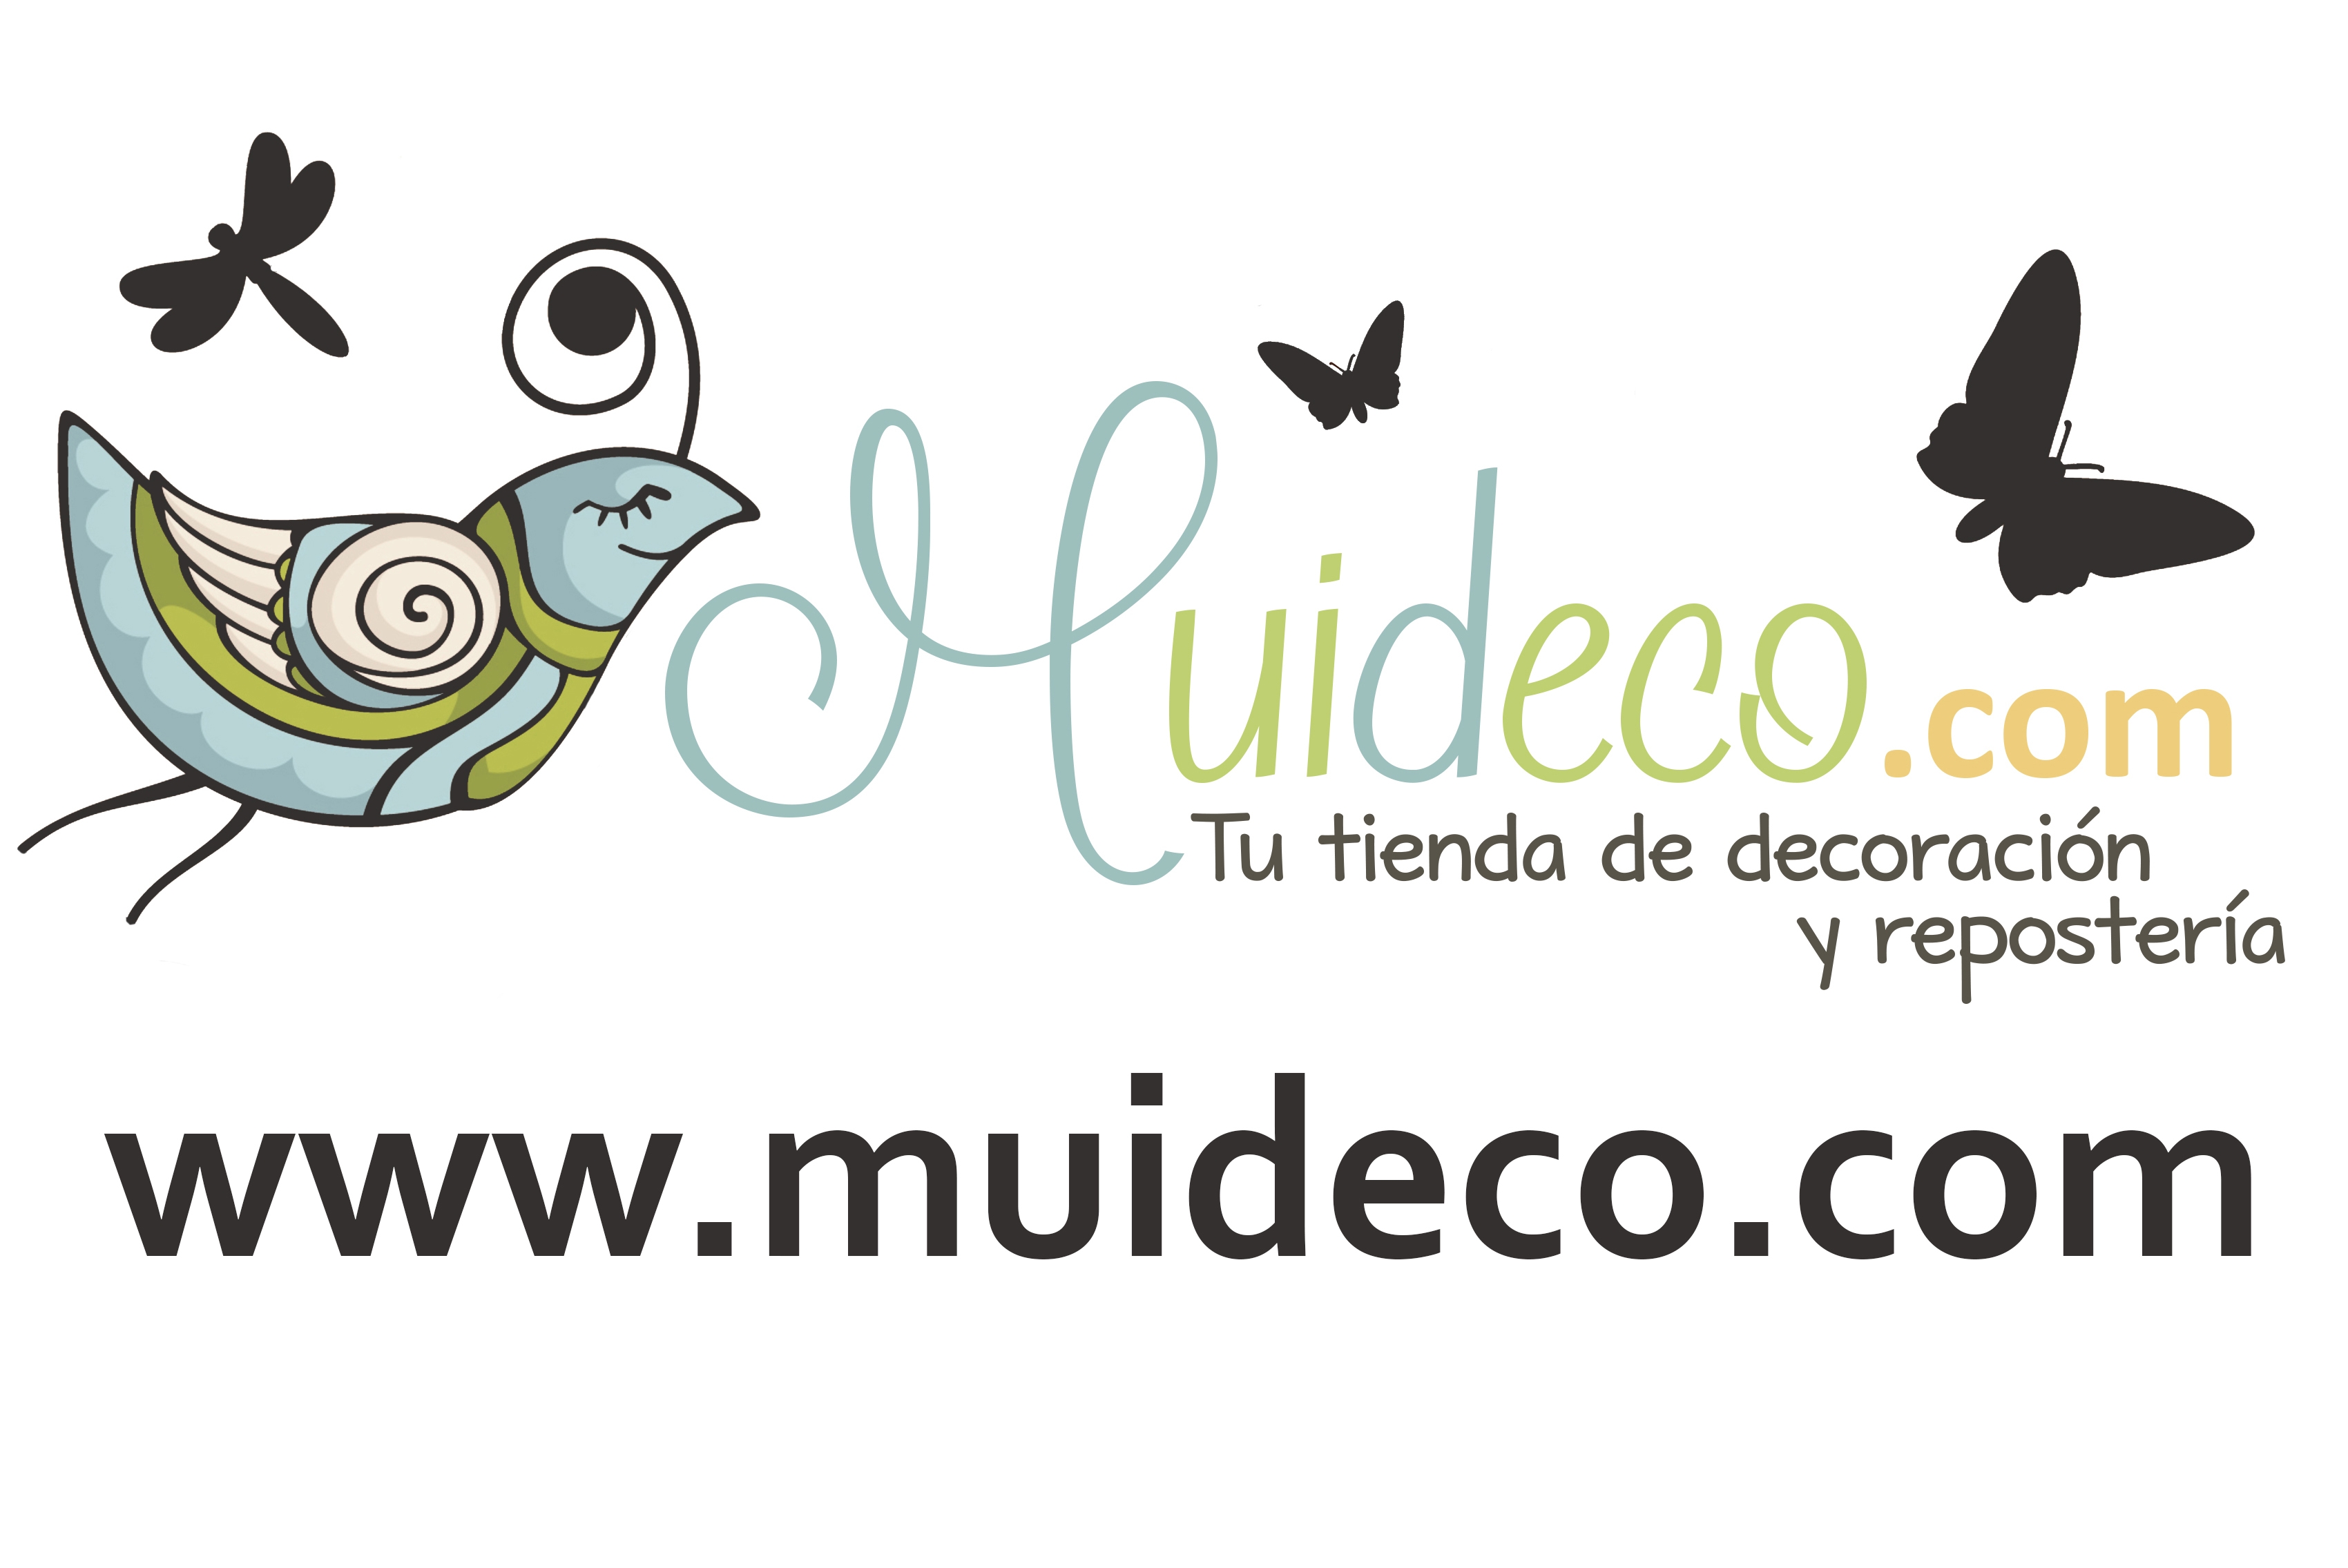 MUIDECO.COM